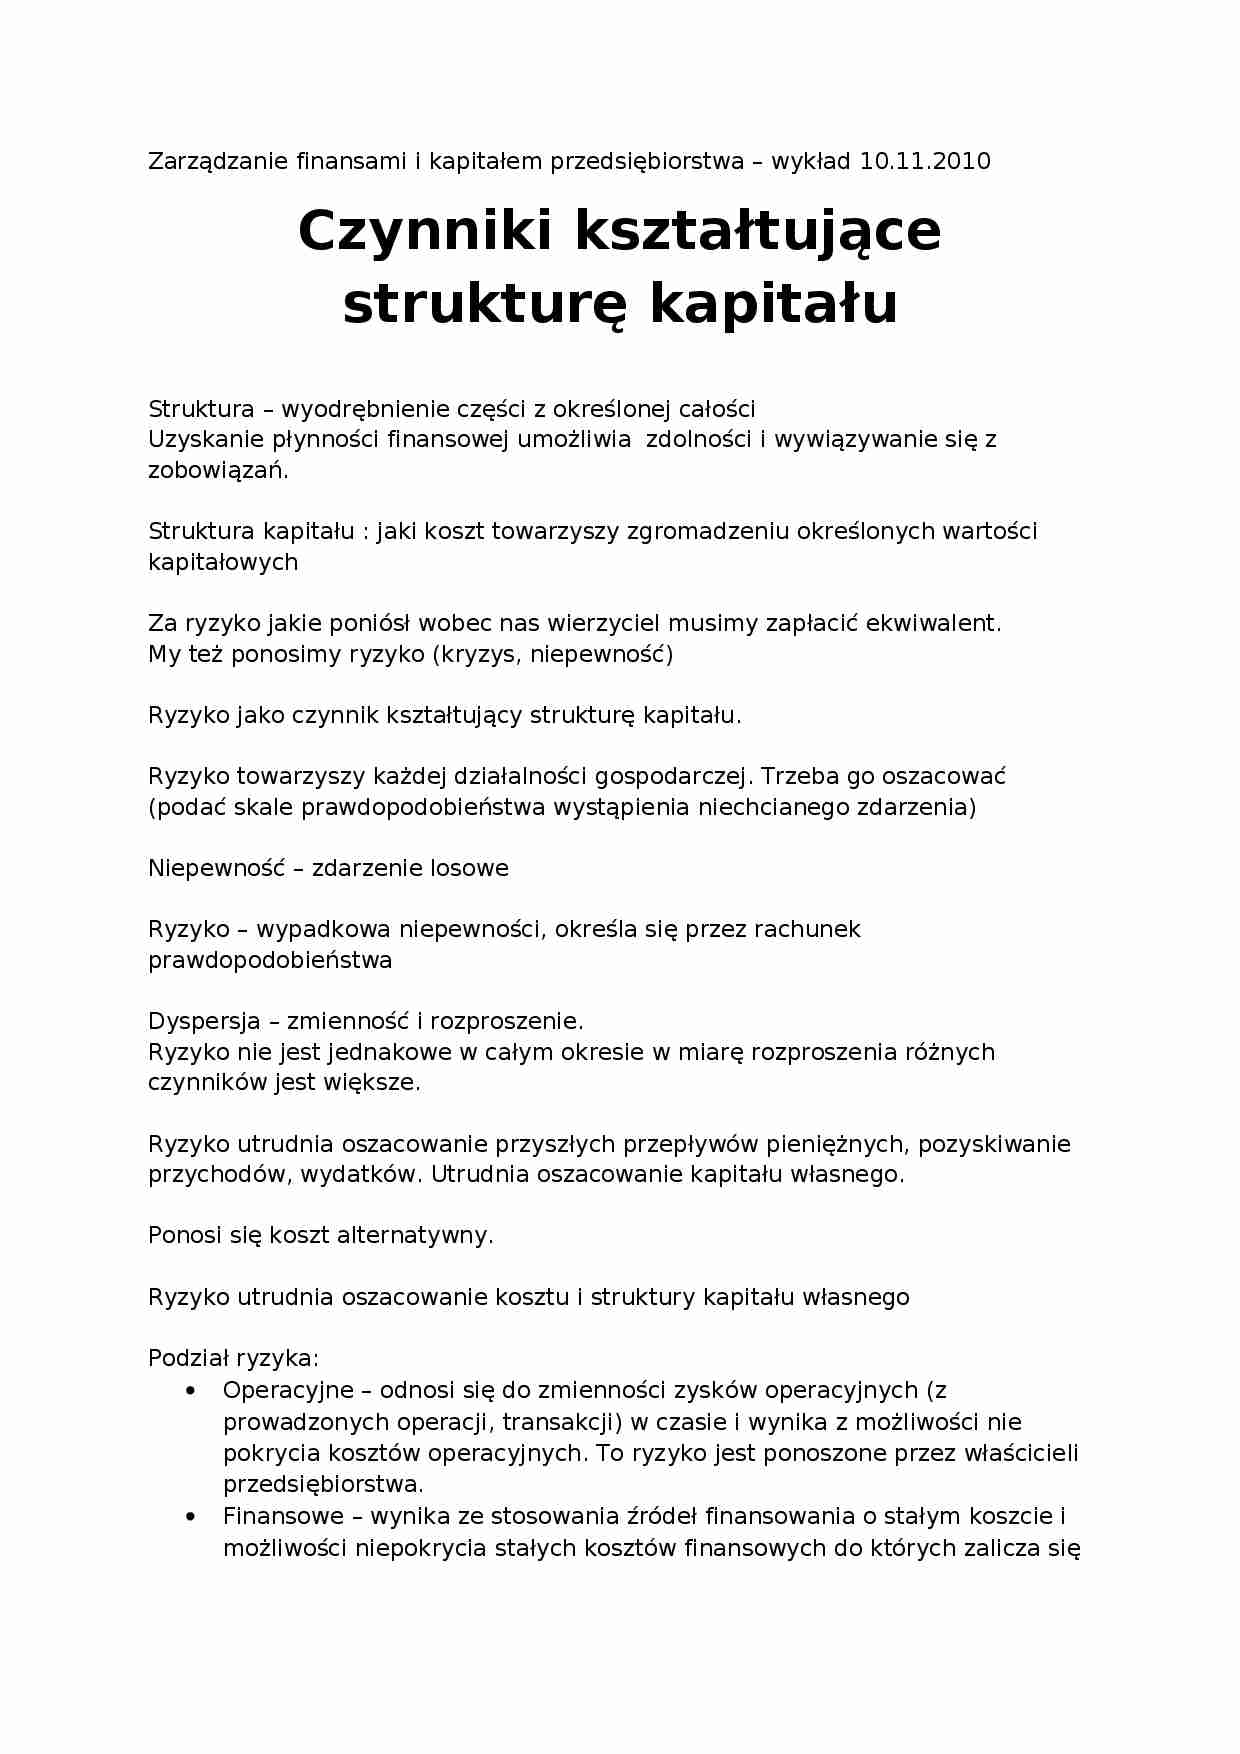 Czynniki kształtujące strukturę kapitału - strona 1